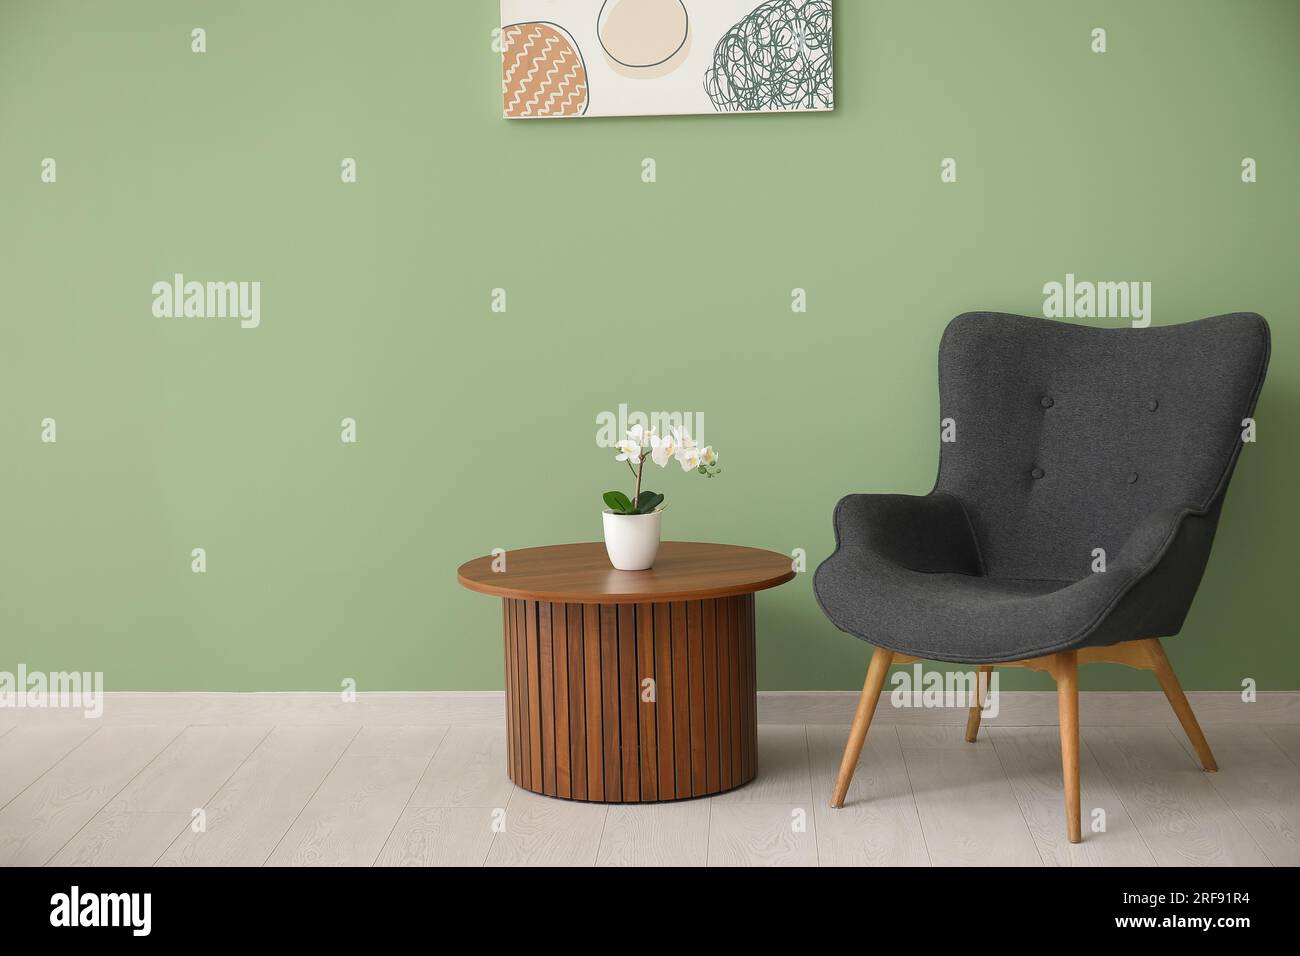 pintura verde para paredes y decoración gris verdoso